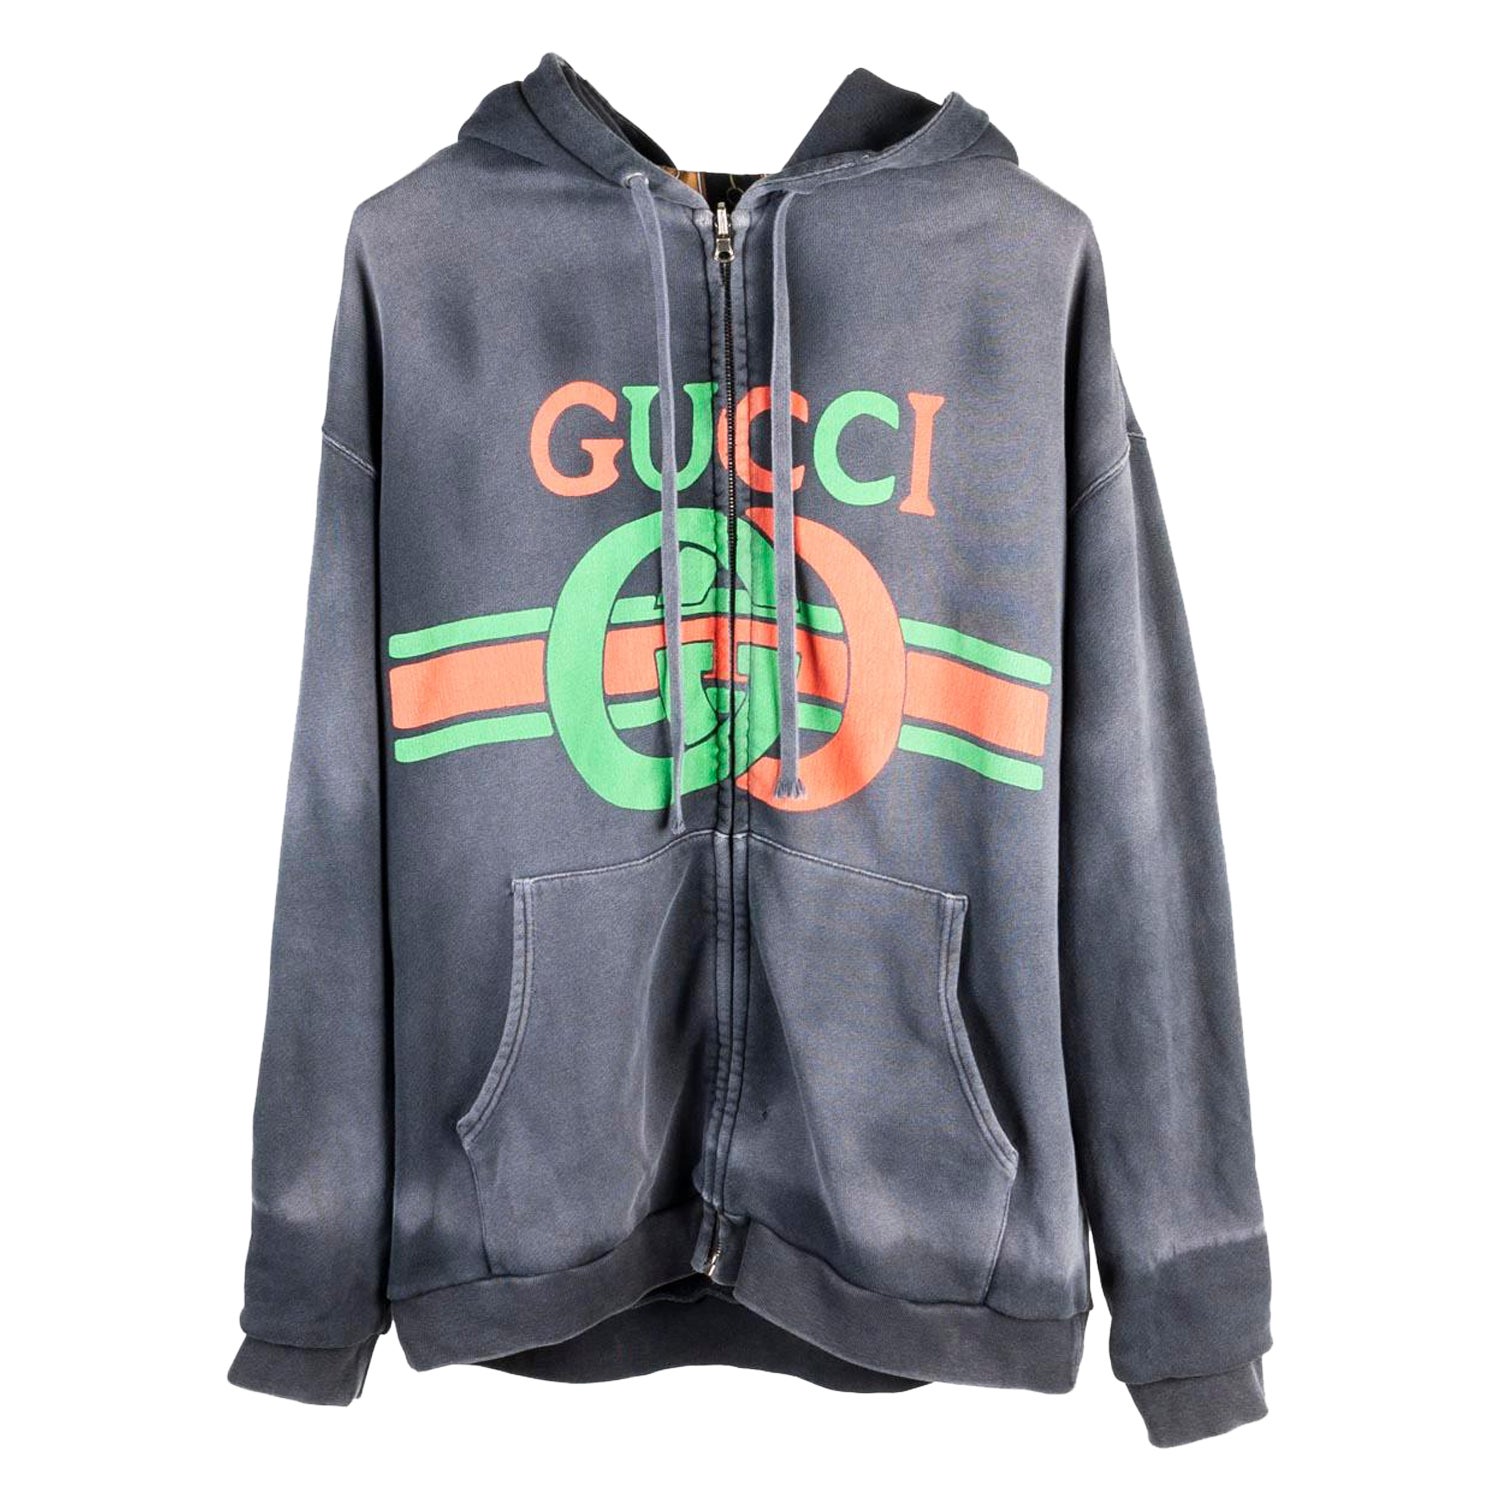 Gucci, veste réversible dégradée à capuche et fermeture éclair, taille M, S66 en vente